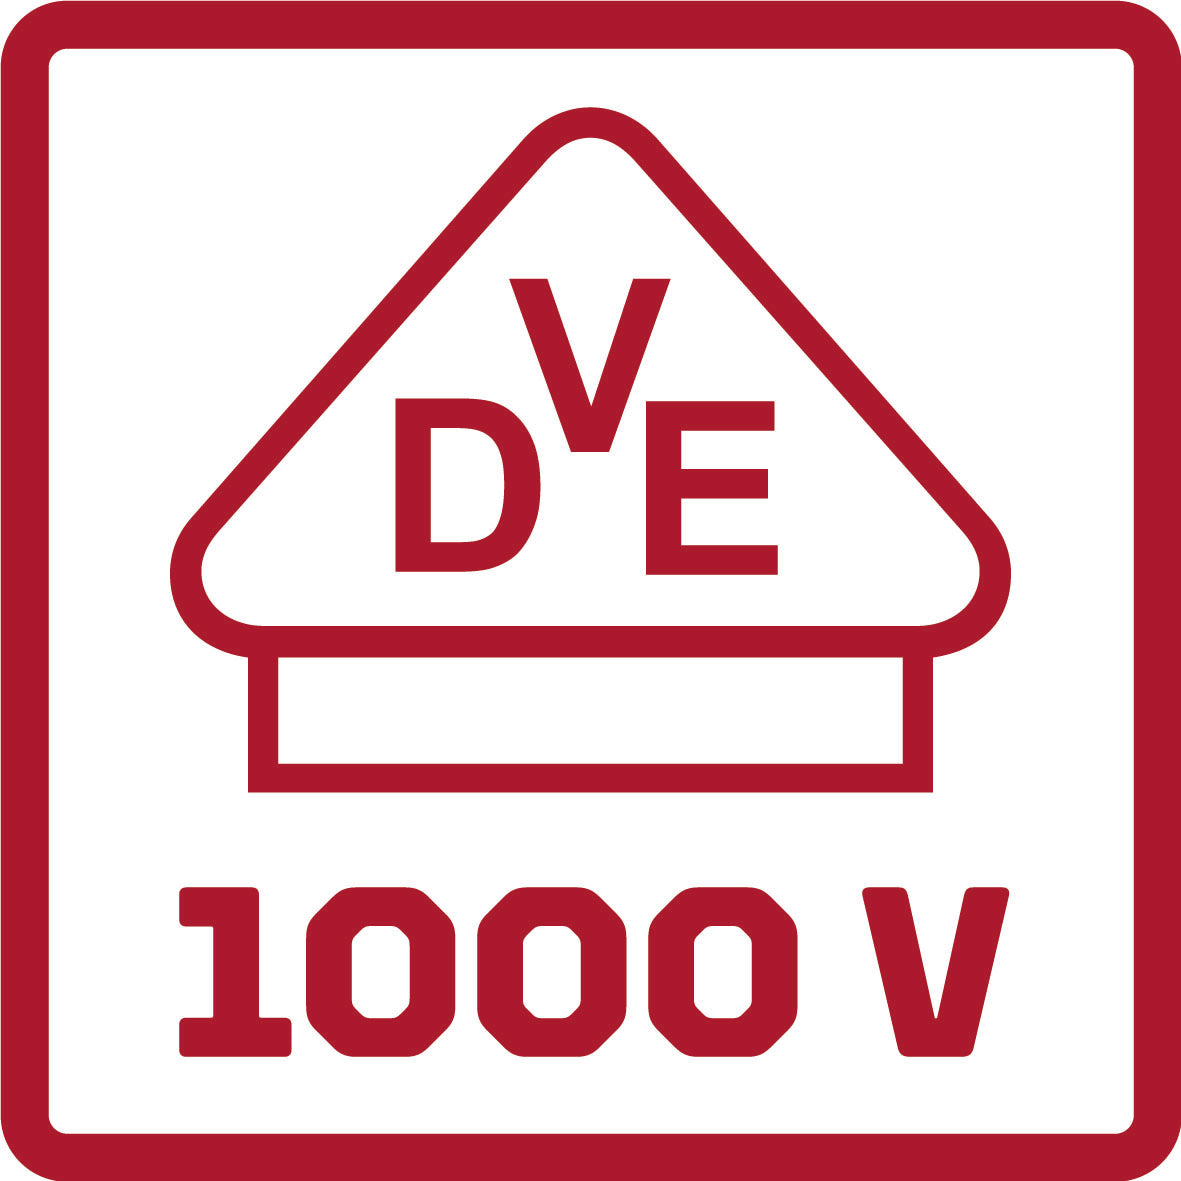 GEDORE red R29400180 - Alicate de corte diagonal VDE L=180 mm, mango de 2 componentes (3301410)